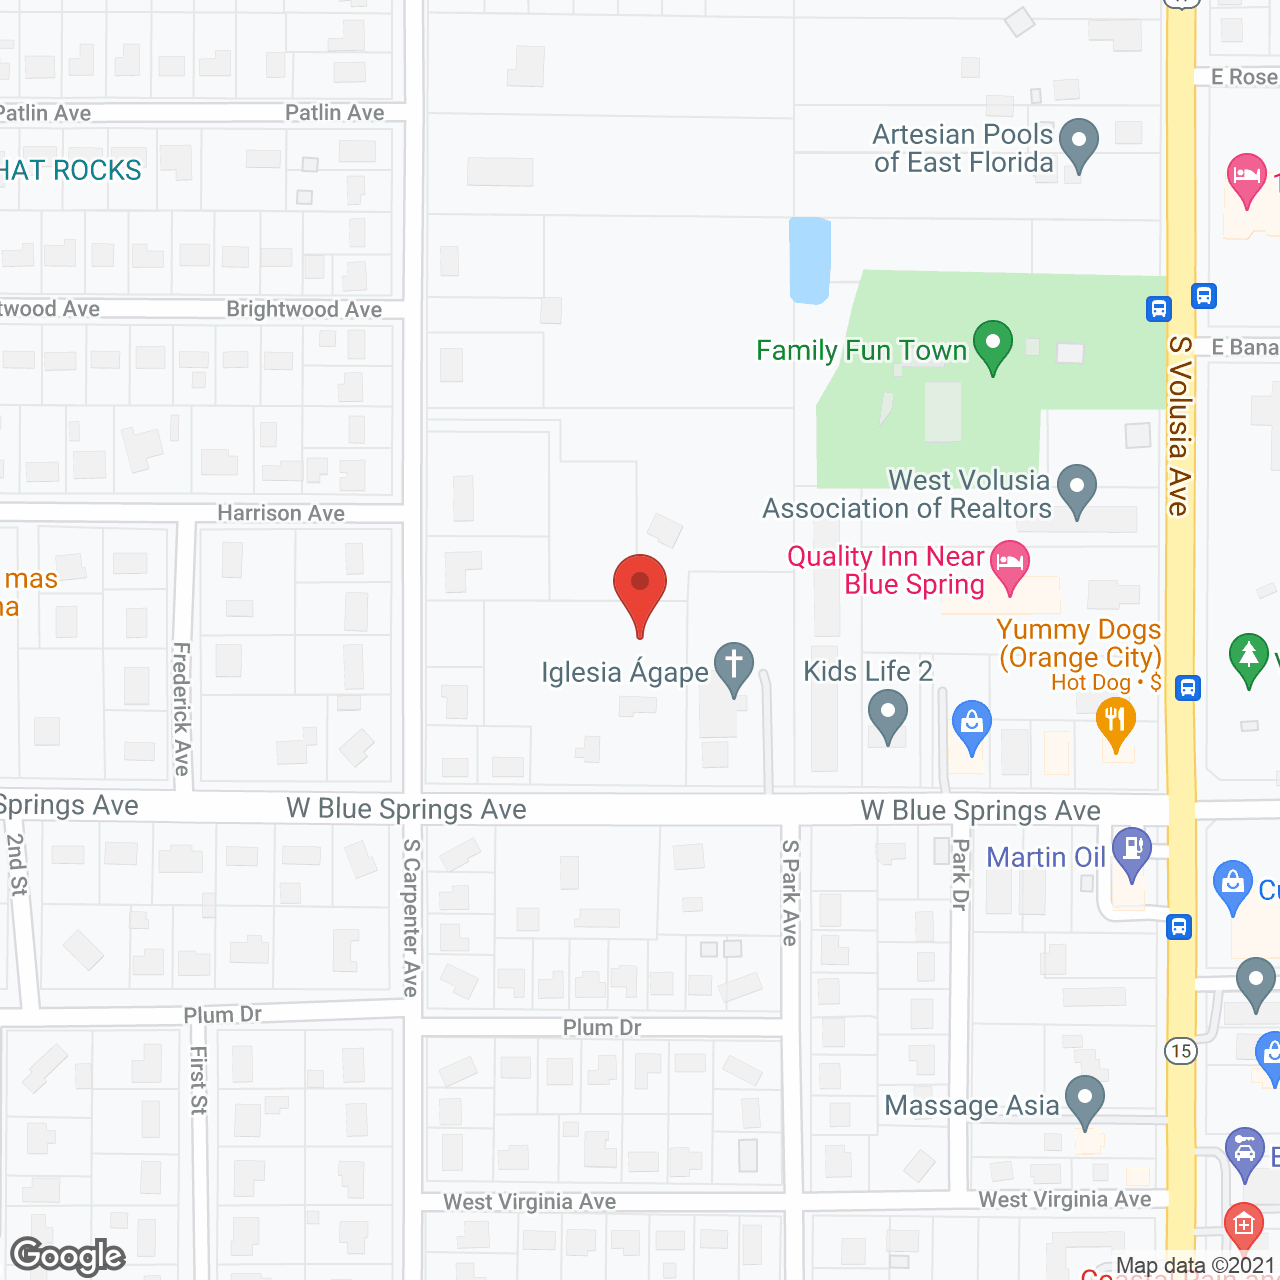 CERTUS at Orange City in google map